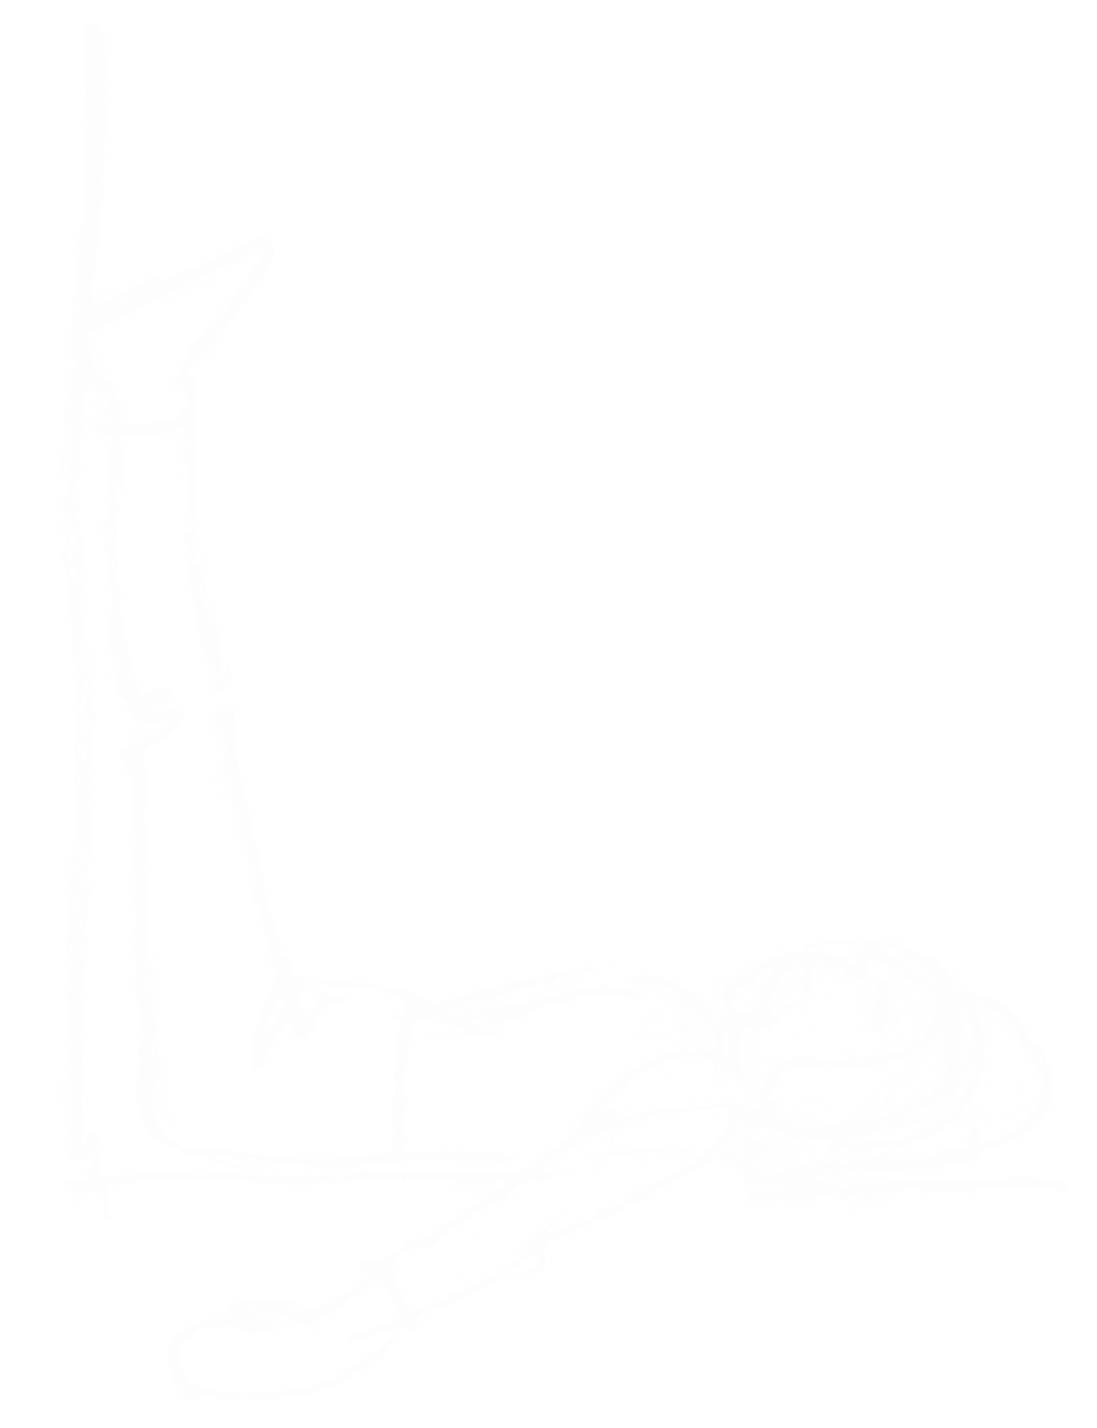 Håndtegnet illustration af person i yogastilling